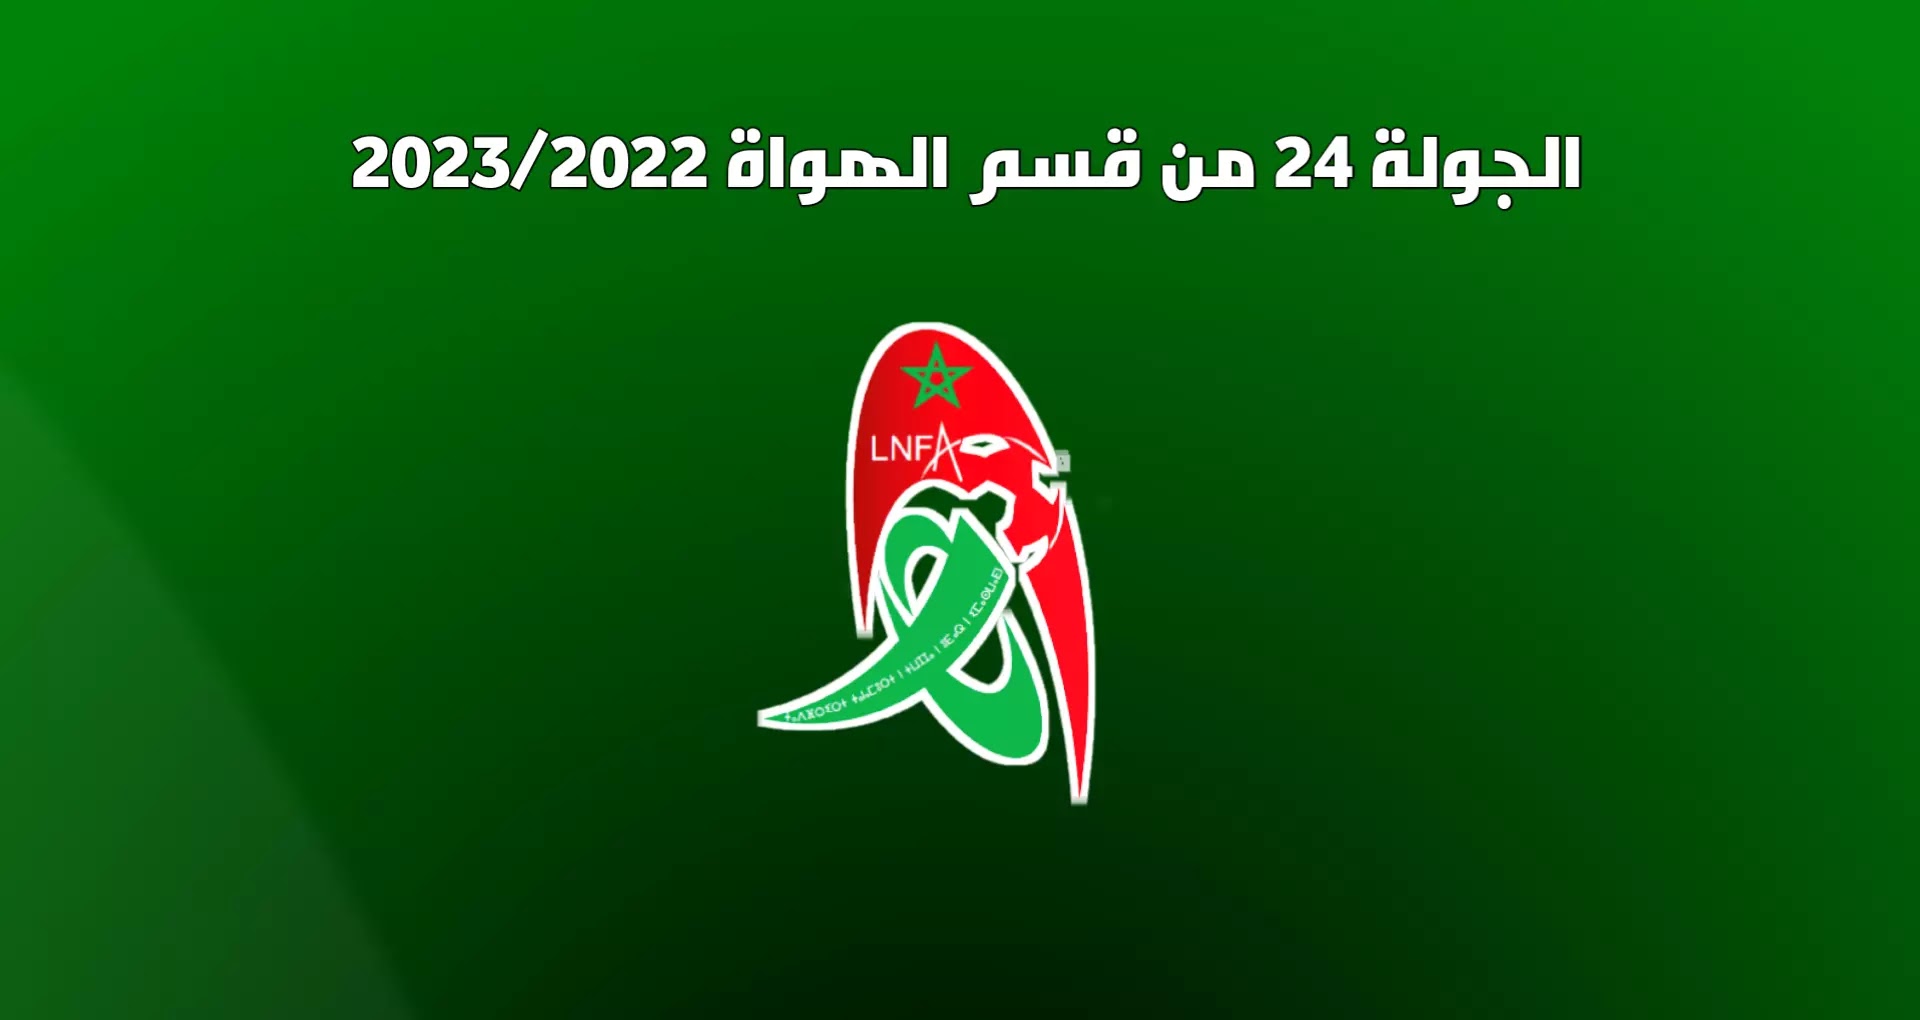 مواعيد مباريات الجولة 24 من القسم الوطني هواة 2023/2022